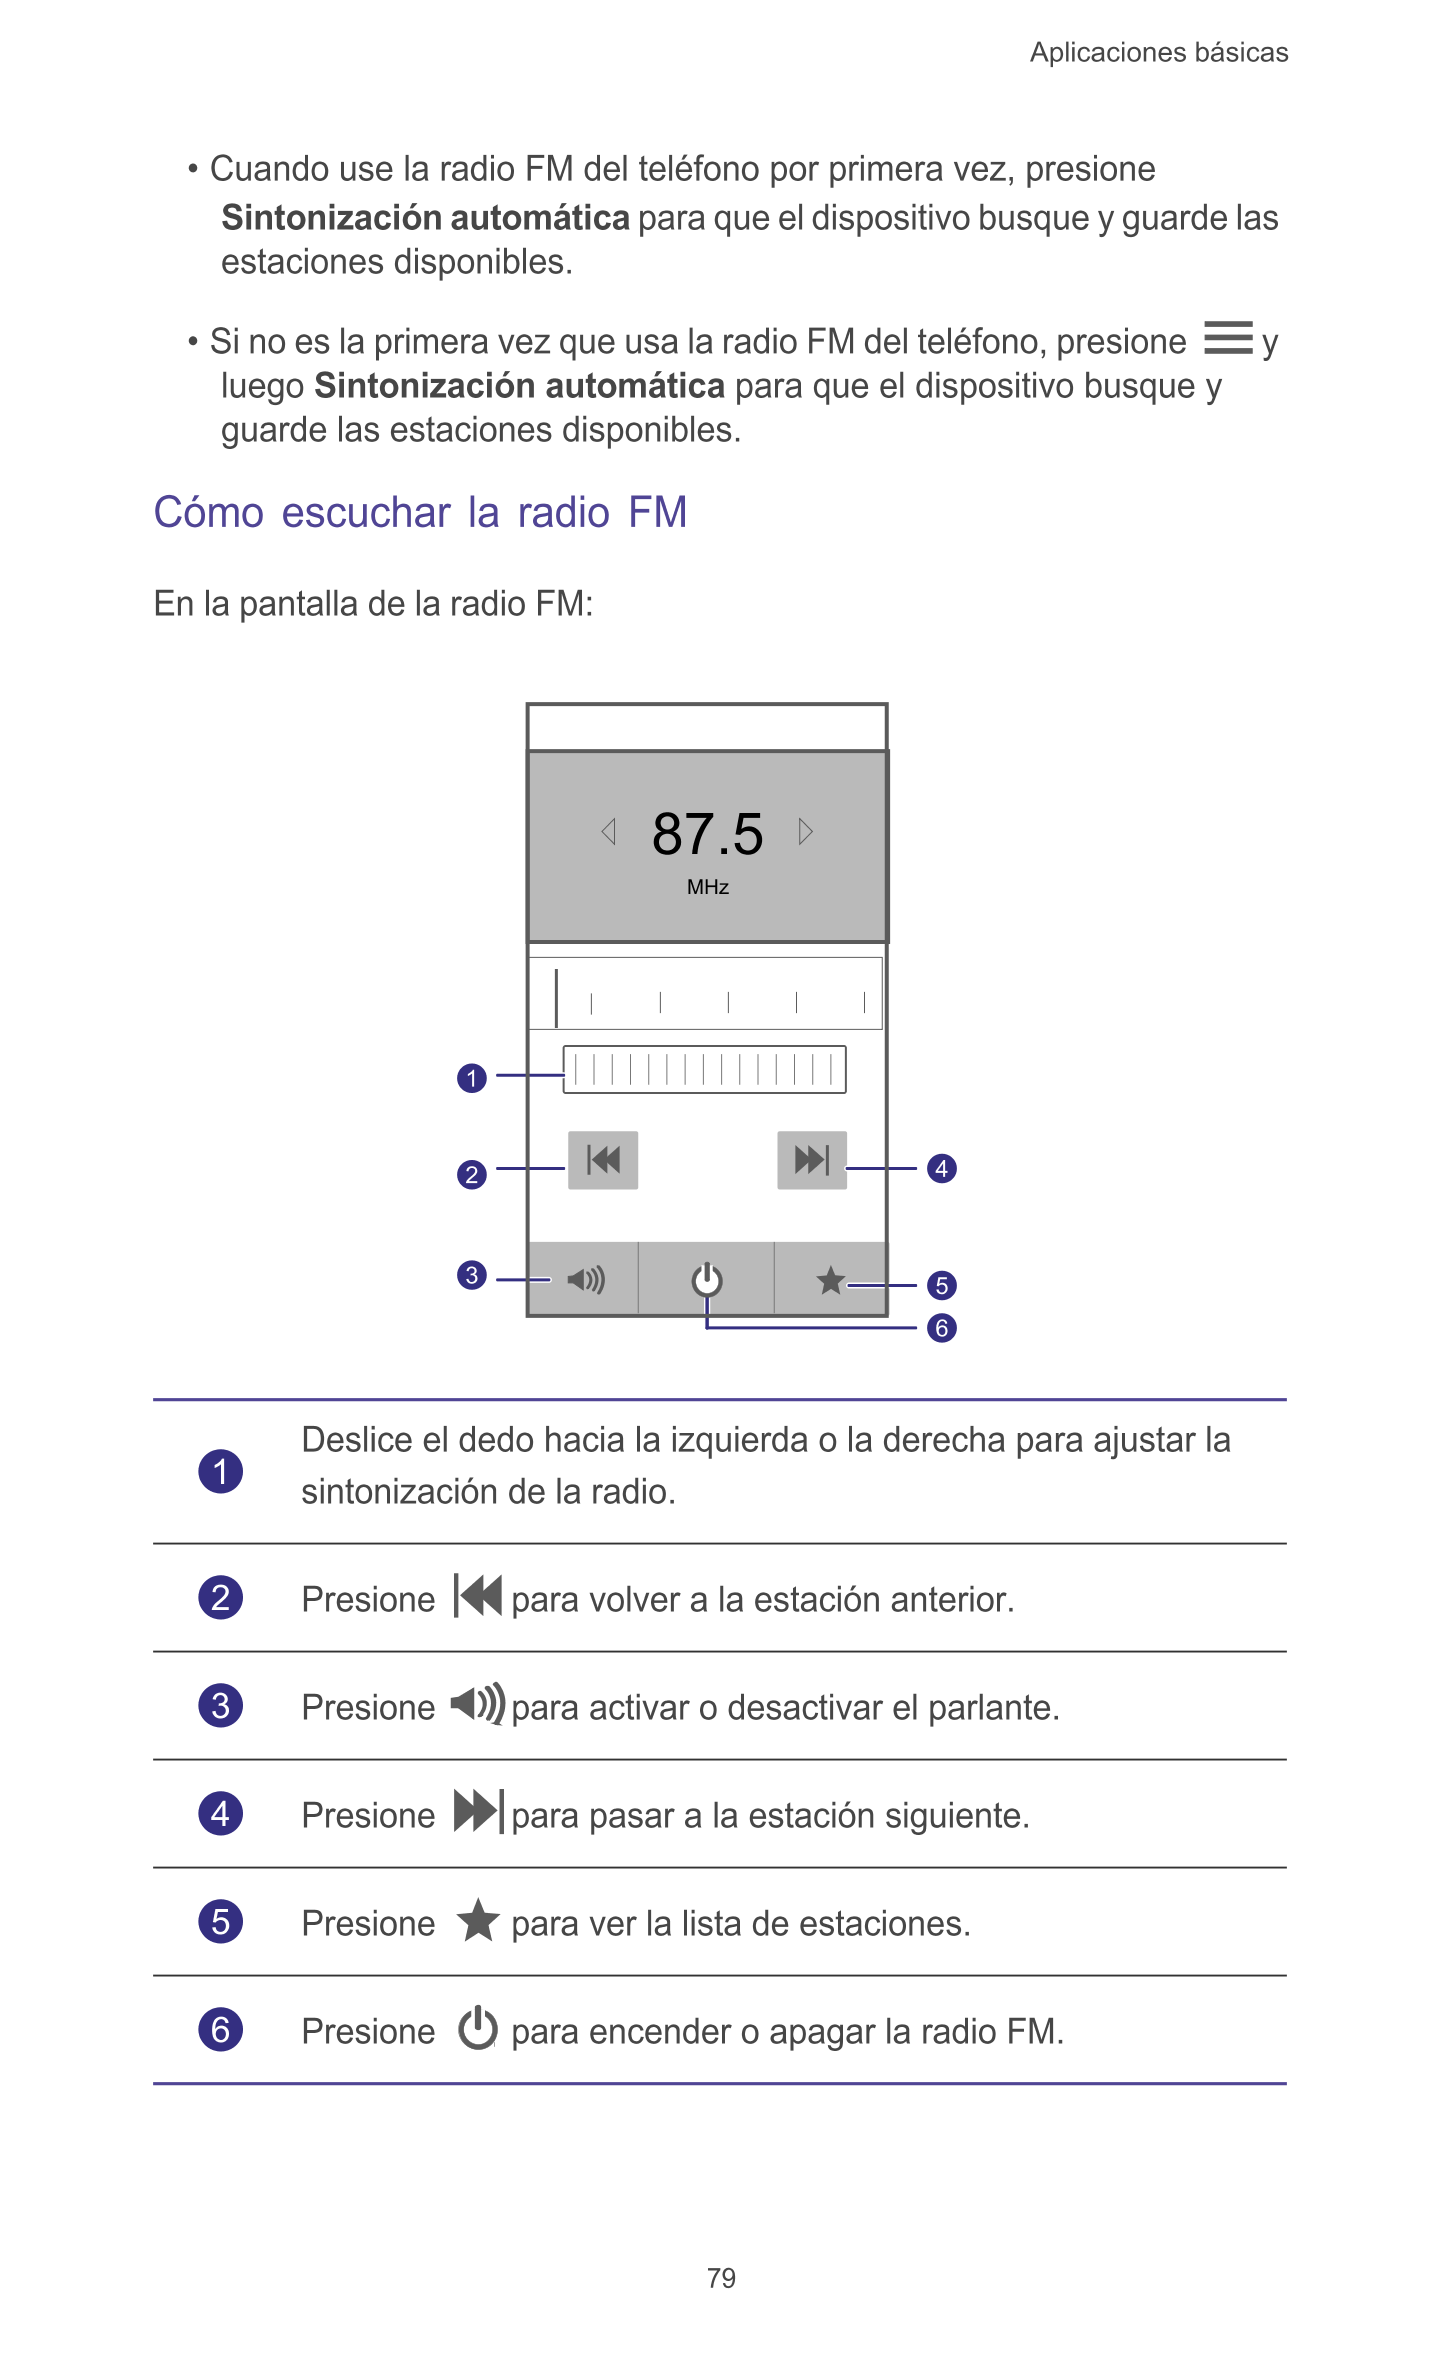 Aplicaciones básicas 
• Cuando use la radio FM del teléfono por primera vez, presione 
Sintonización automática para que el disp